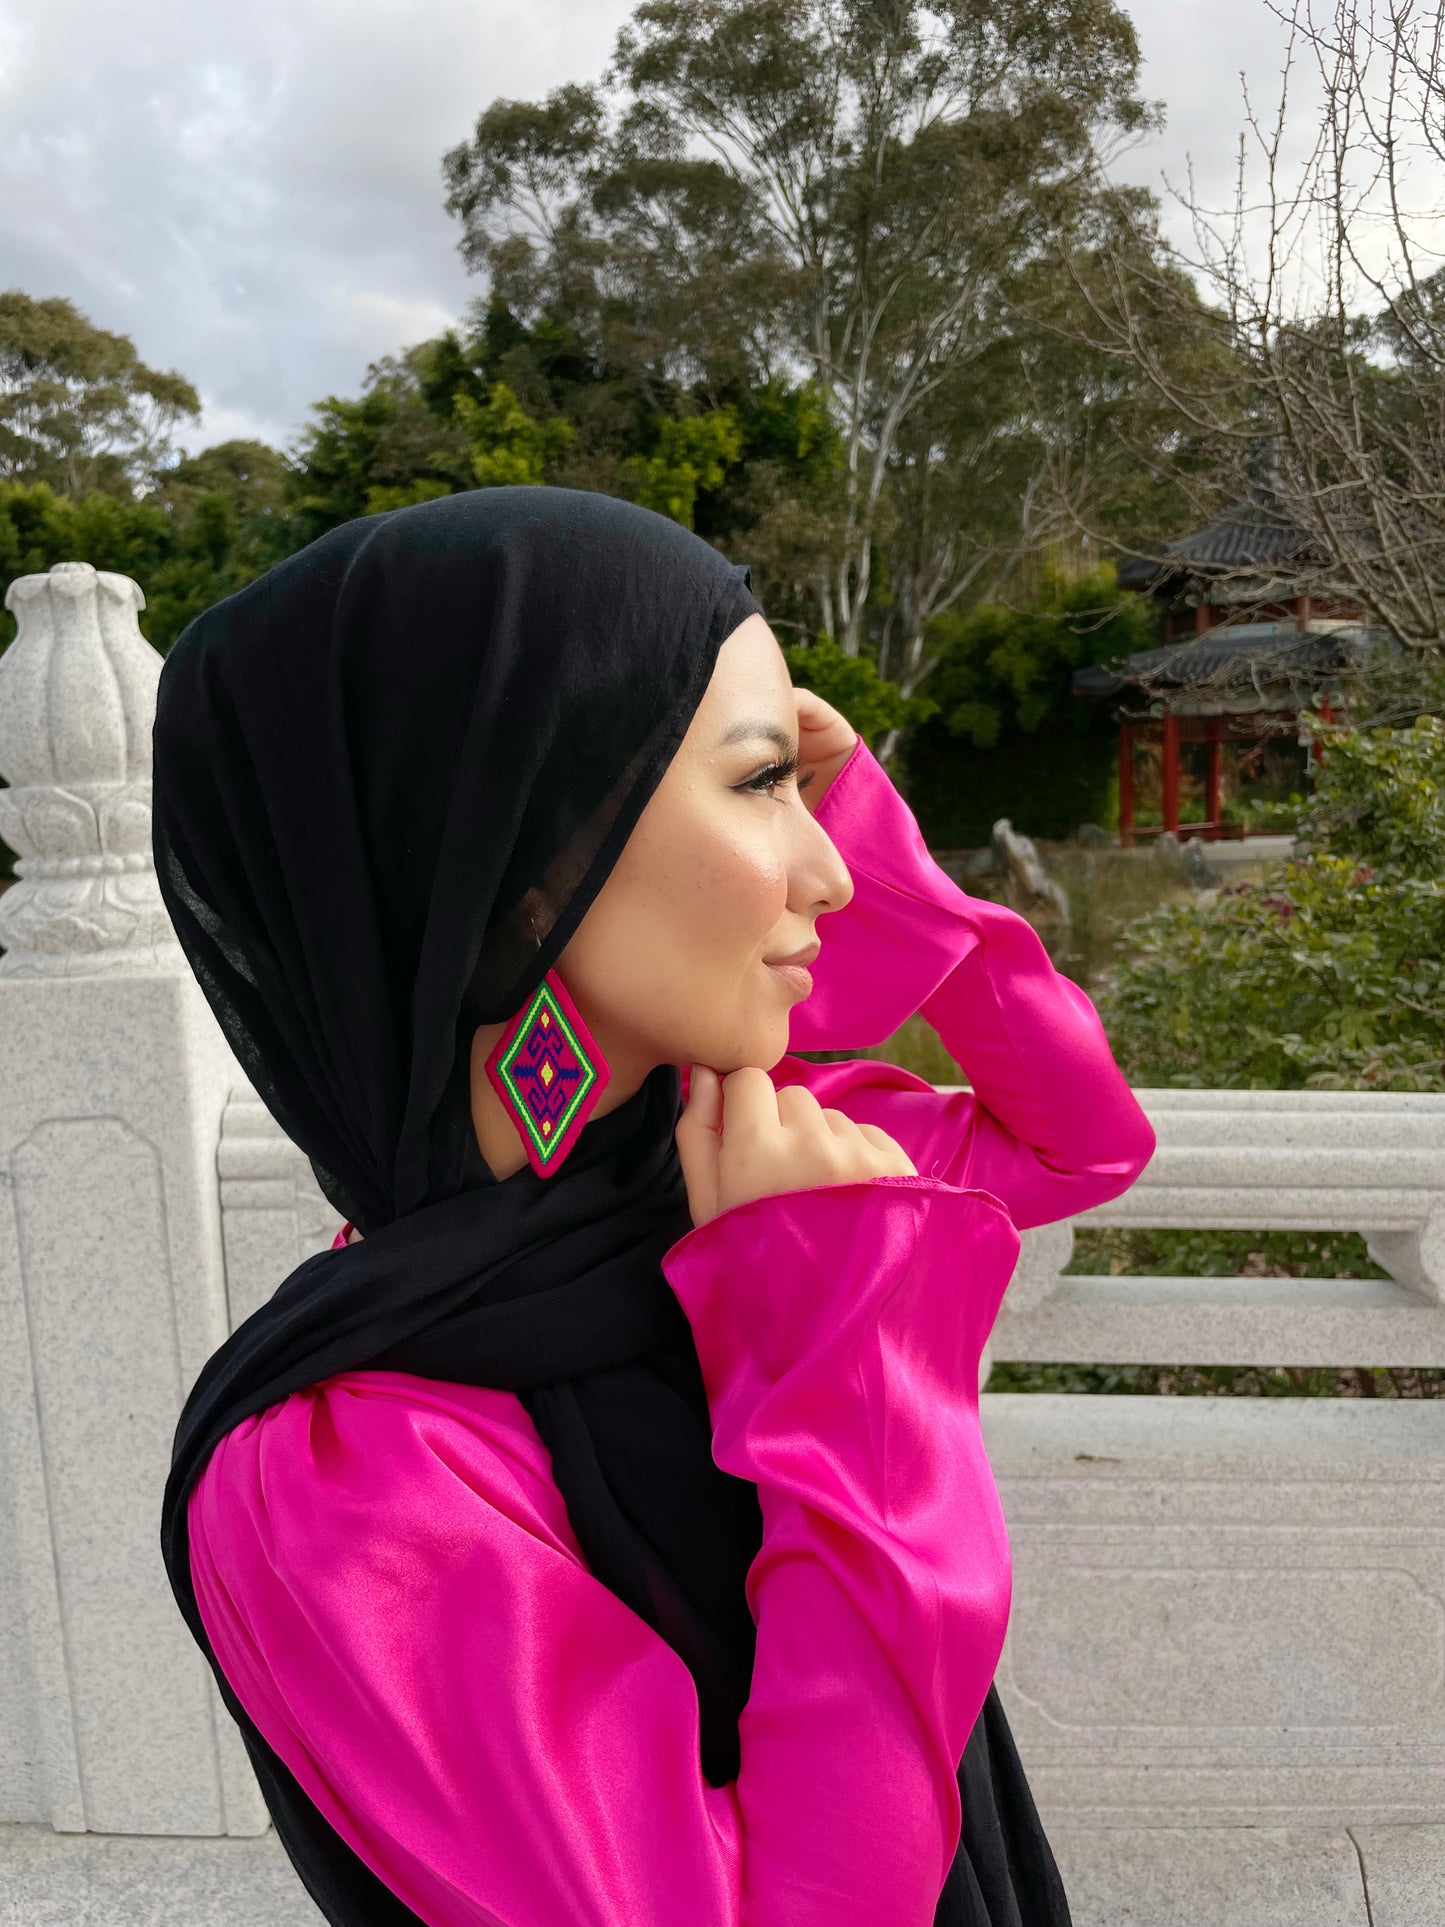 " Noorband"  Qabtumar Earrings in pink